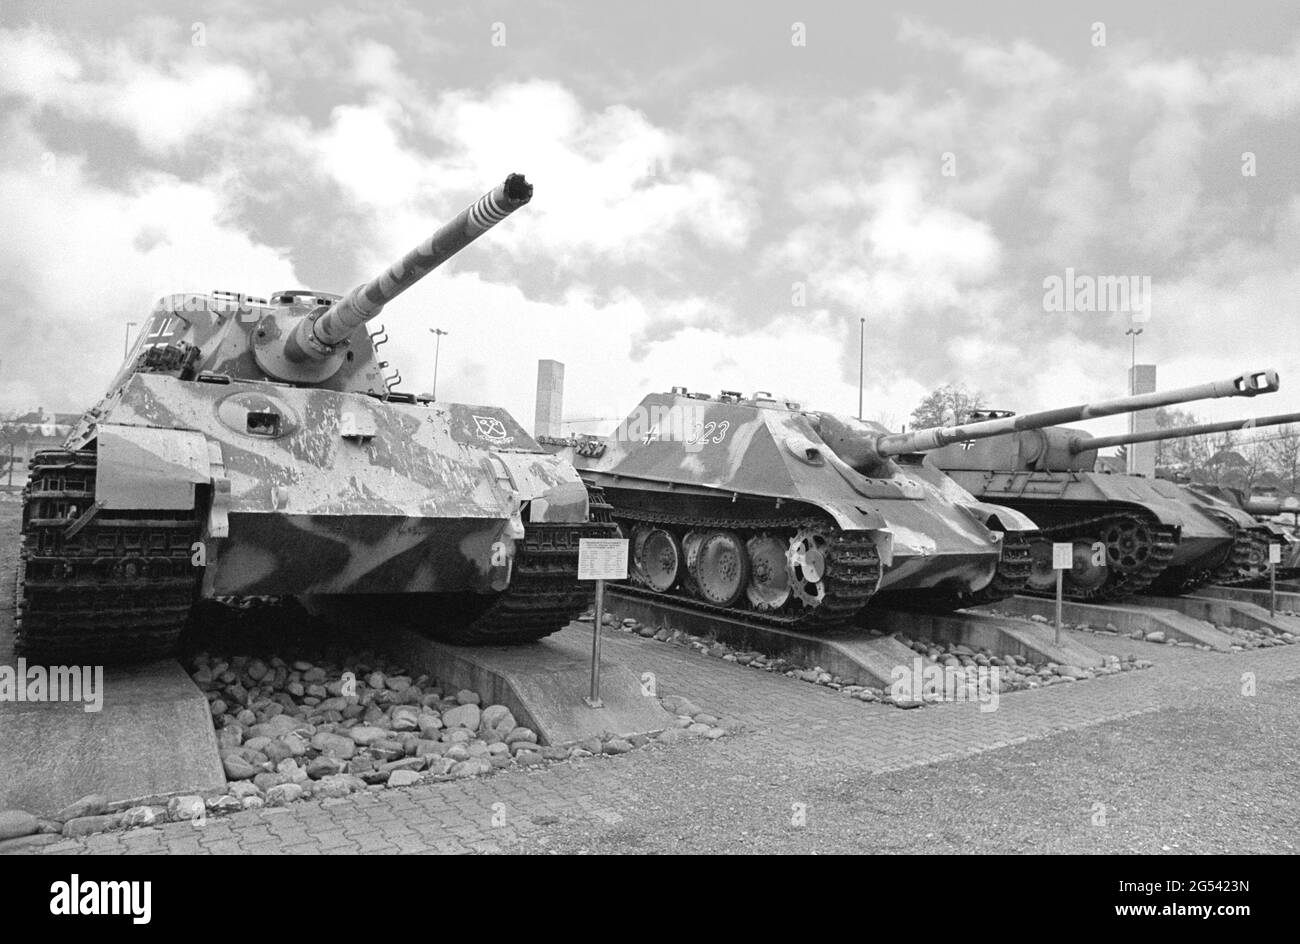 -Suisse, le musée du char à Thun (Berne), les chars allemands de la Seconde Guerre mondiale Panzer VI auf B Tiger II (Königstiger), Jagdpanther et Panzer V Panther. Banque D'Images